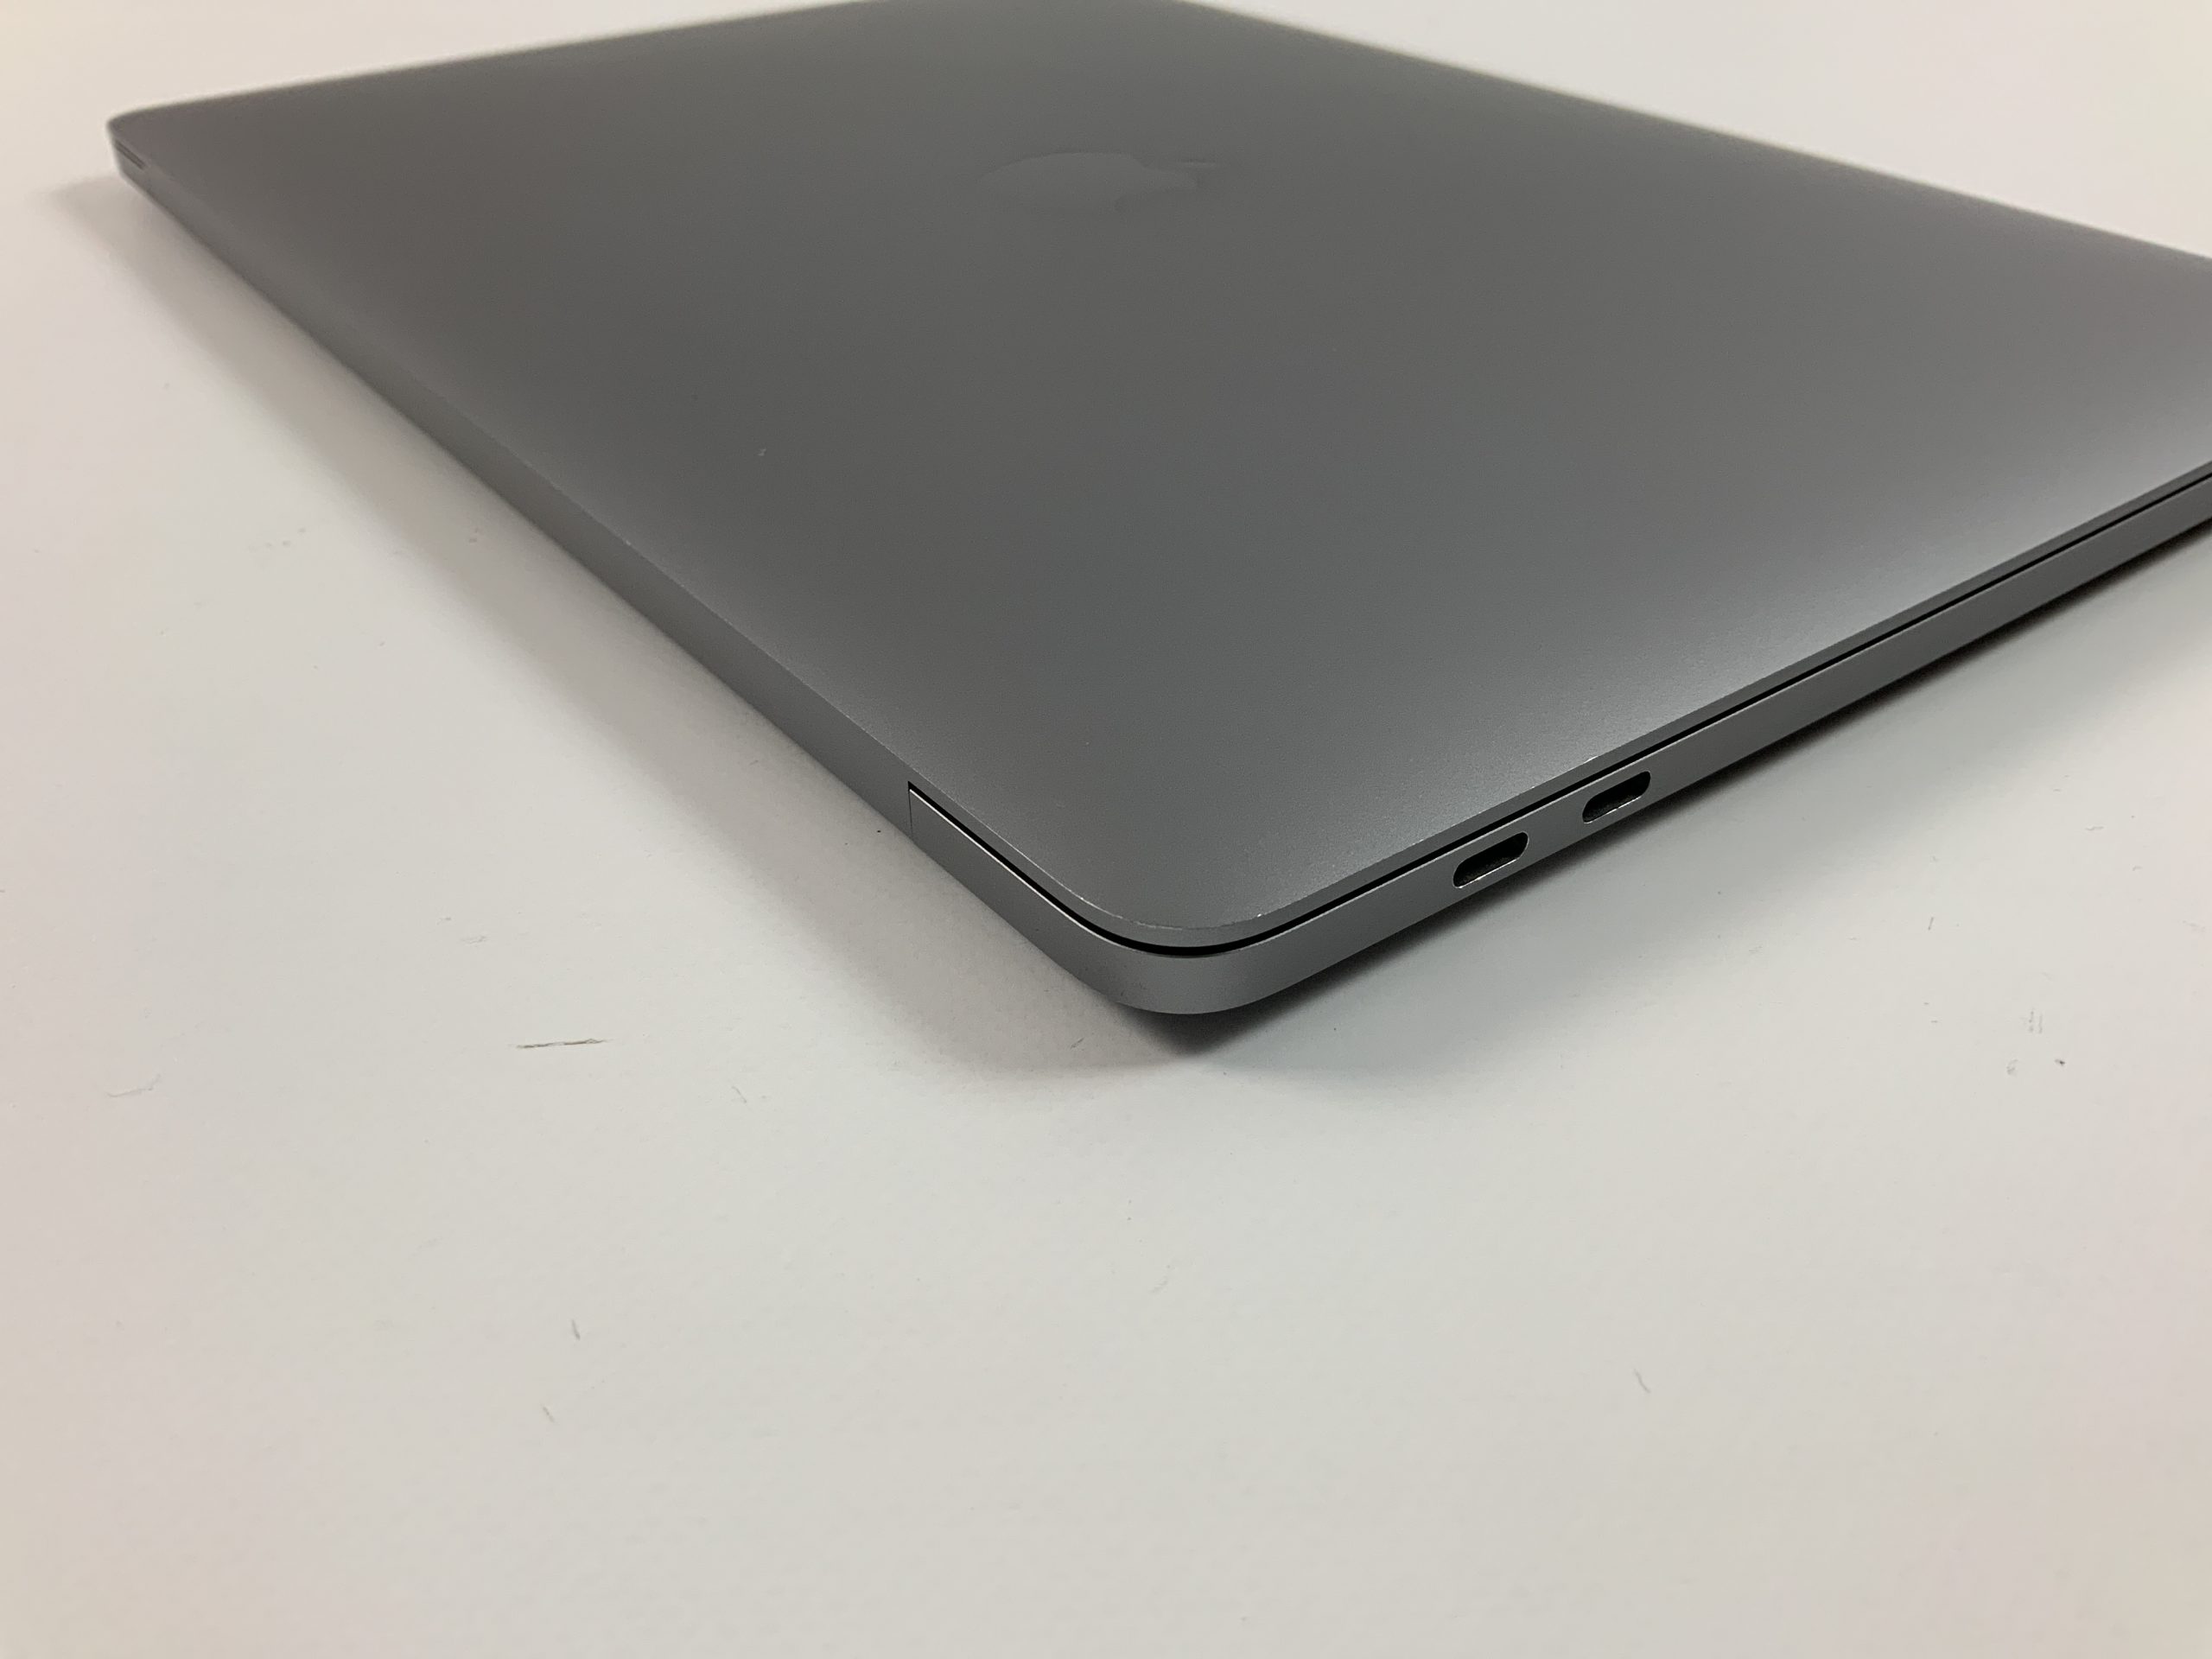 MacBook Pro 13" 4TBT Mid 2018 (Intel Quad-Core i7 2.7 GHz 16 GB RAM 1 TB SSD), Space Gray, Intel Quad-Core i7 2.7 GHz, 16 GB RAM, 1 TB SSD, Kuva 4